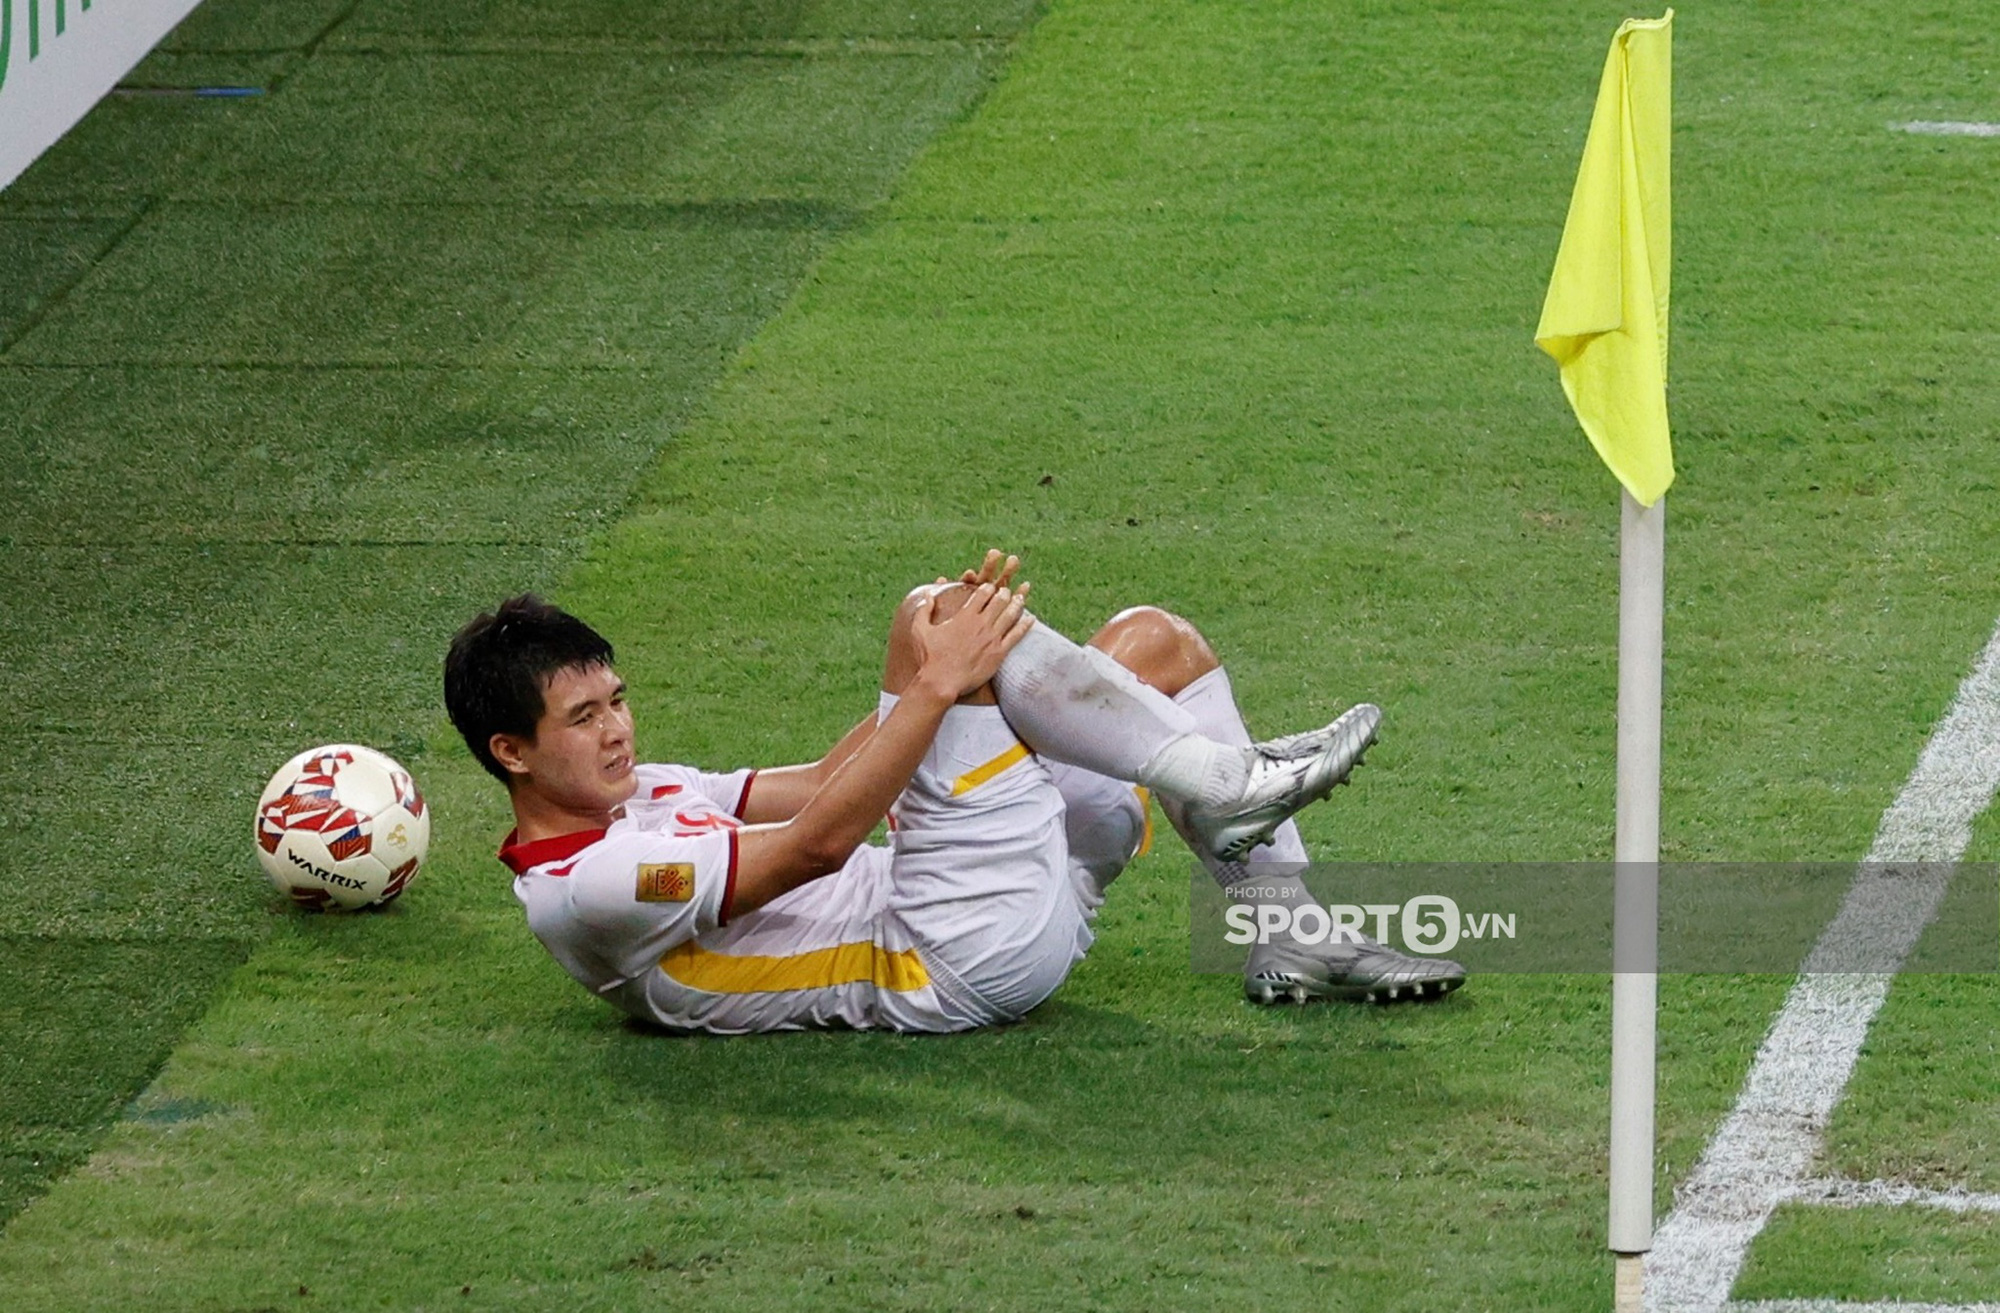 Đang cân team, Đức Chinh đau đớn rời sân giữa trận quyết đấu với Thái Lan - Ảnh 2.